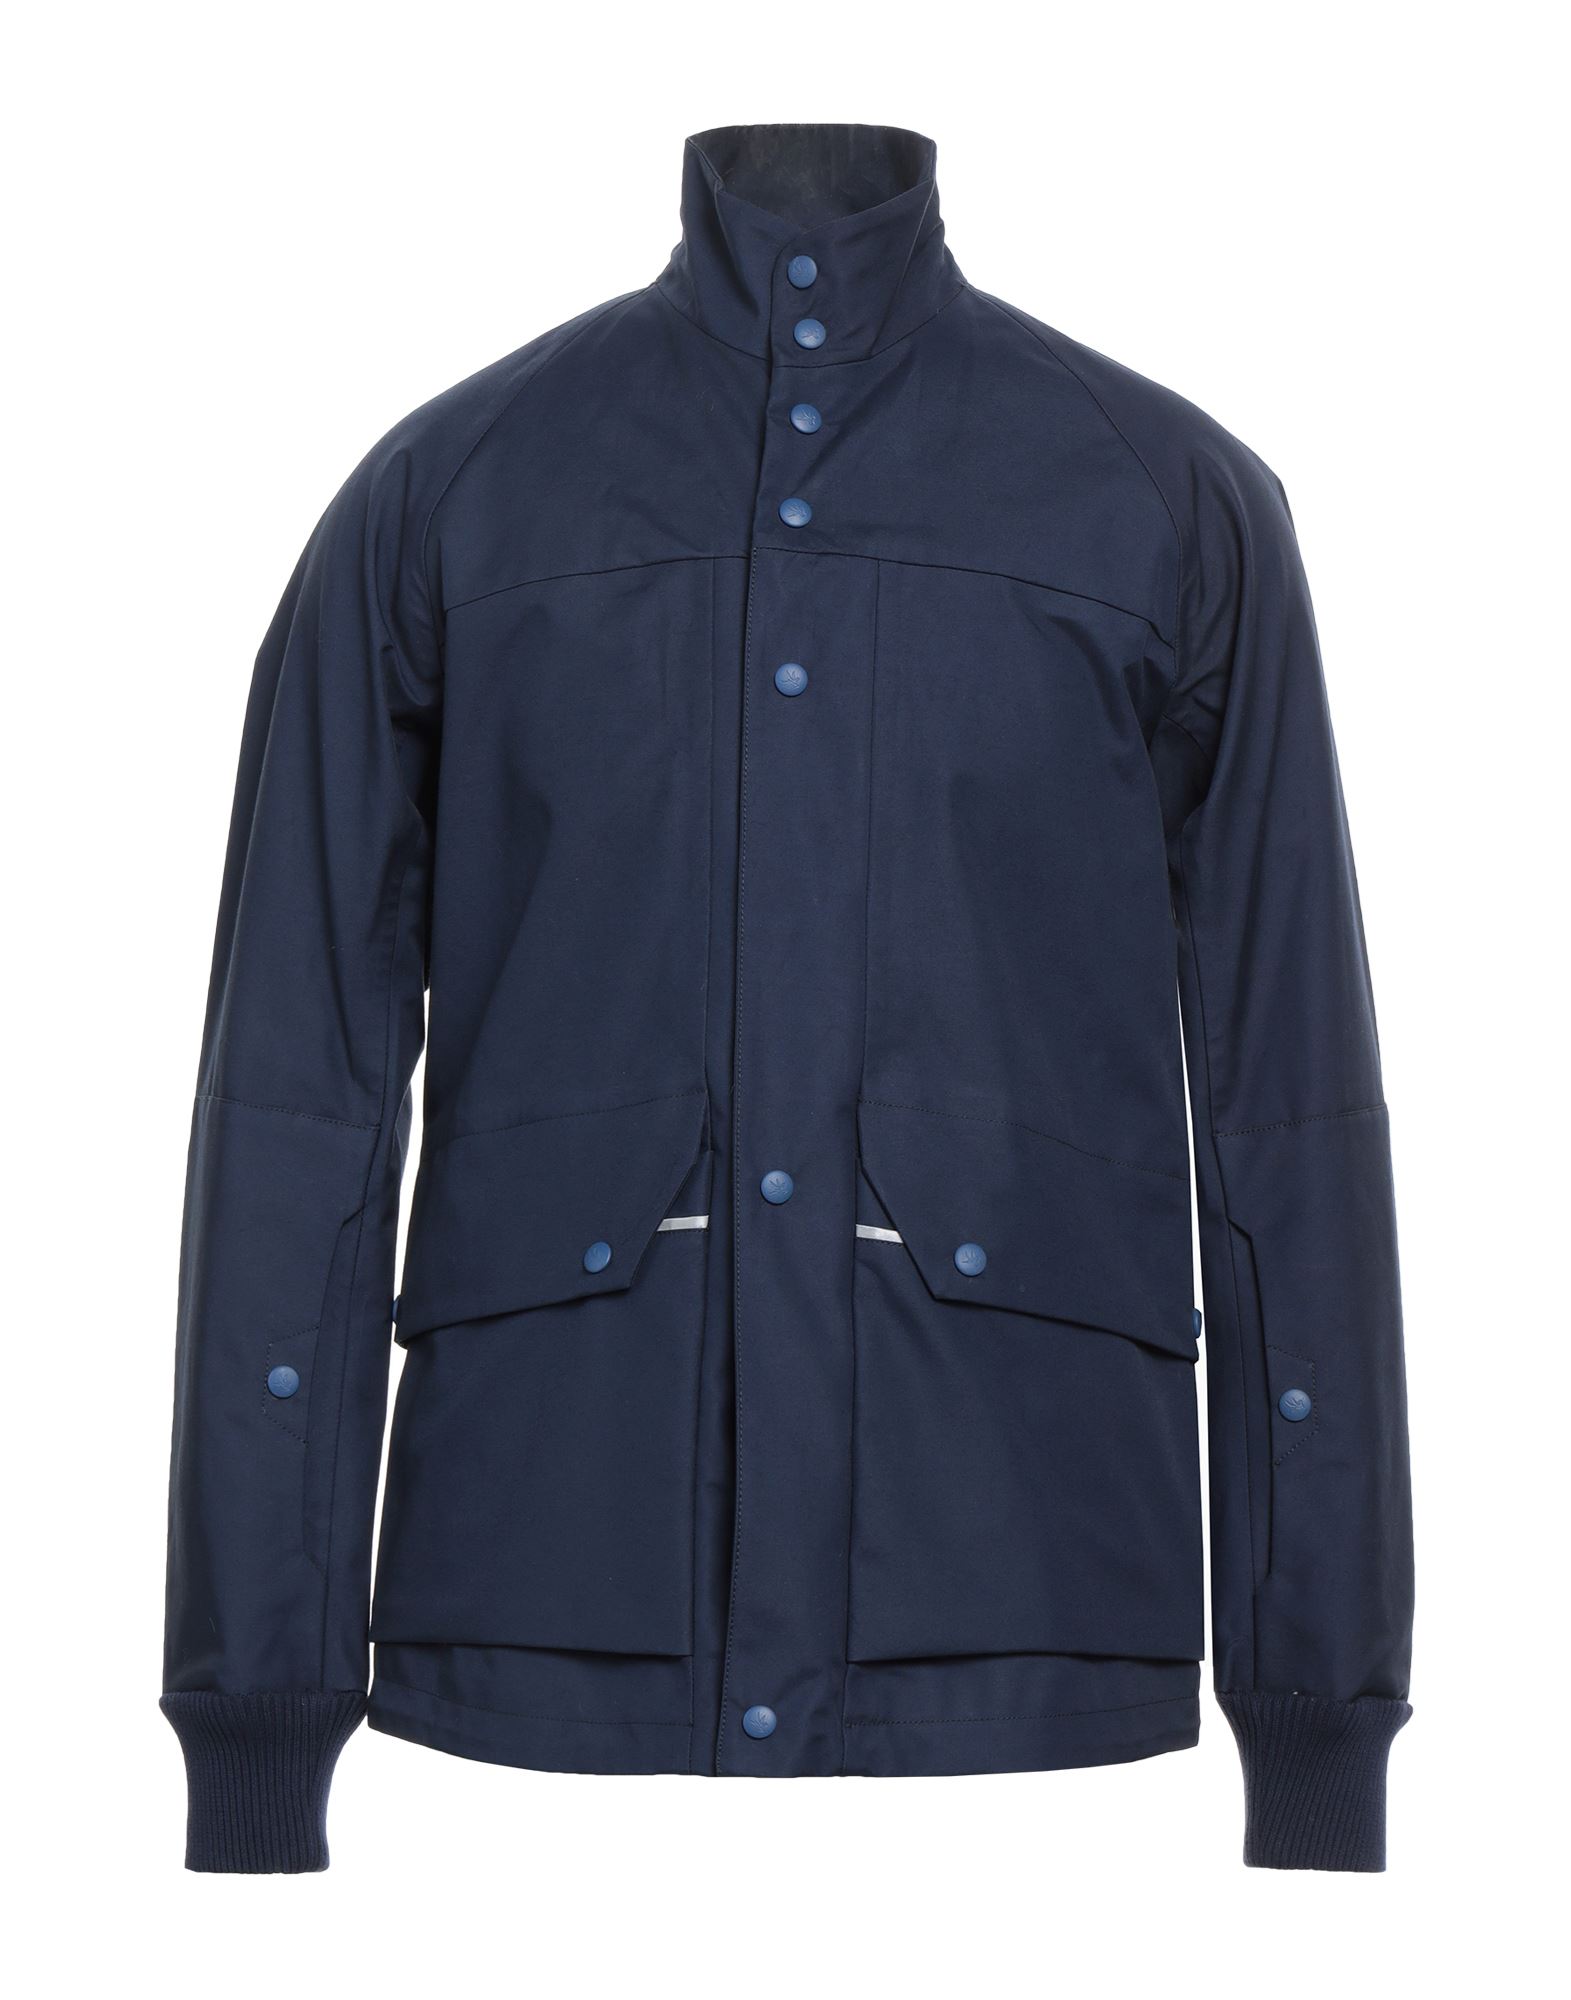 Spiewak Man Jacket Midnight Blue Size S Cotton, Nylon